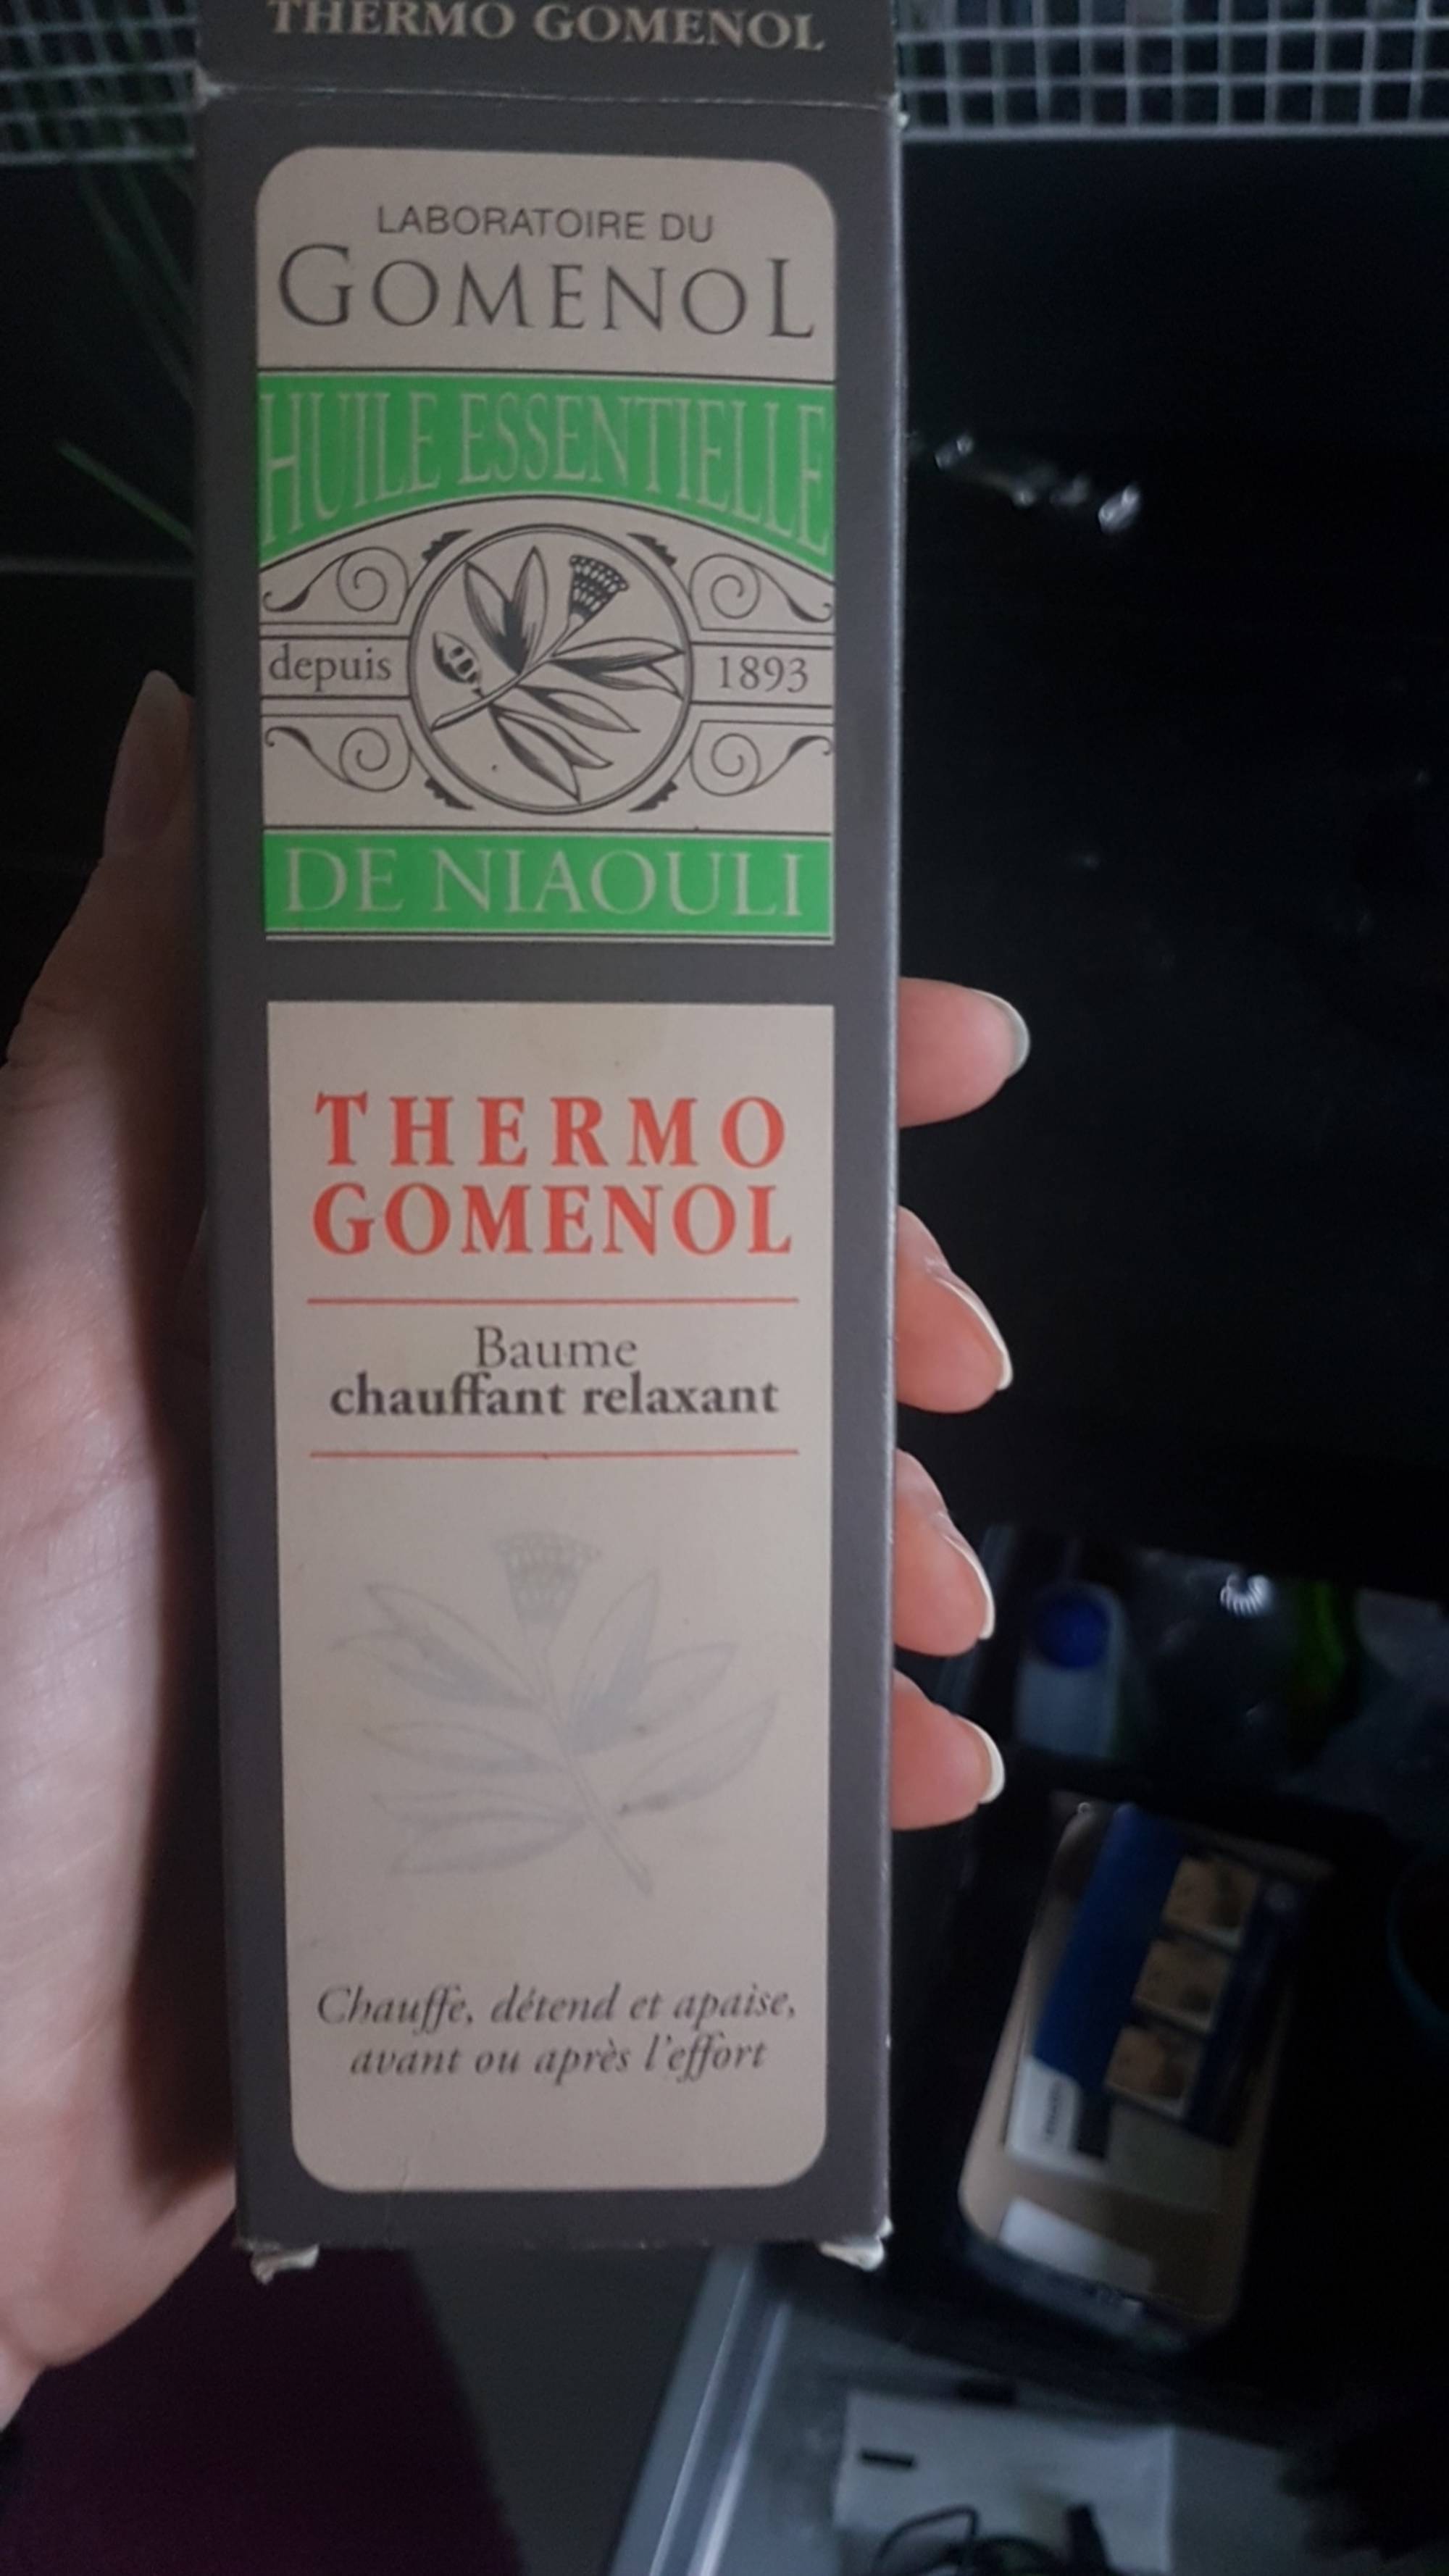 LABORATOIRE DU GOMENOL - Thermo gomenol - Baume chauffant relaxant